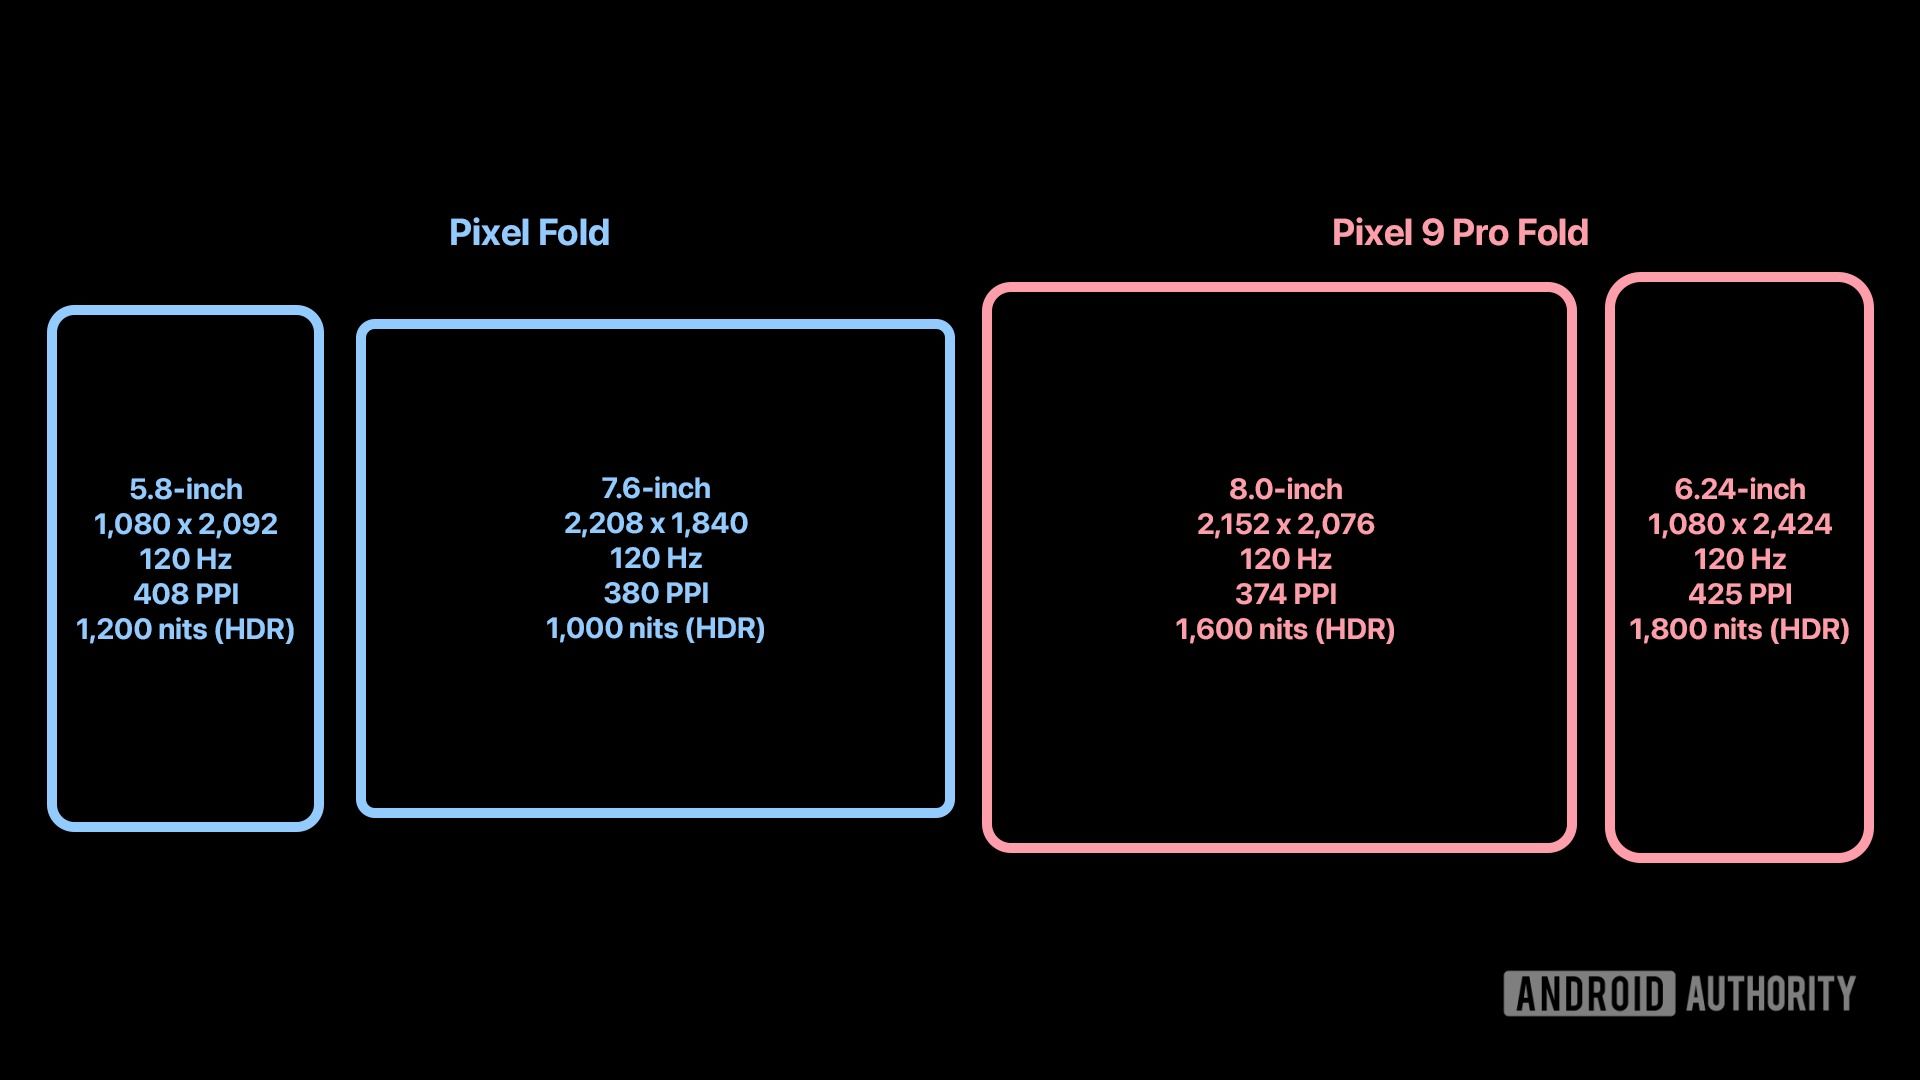 مقایسه‌ی مشخصات نمایشگر داخلی و خارجی پیکسل ۹ پرو فولد گوگل با پیکسل فولد